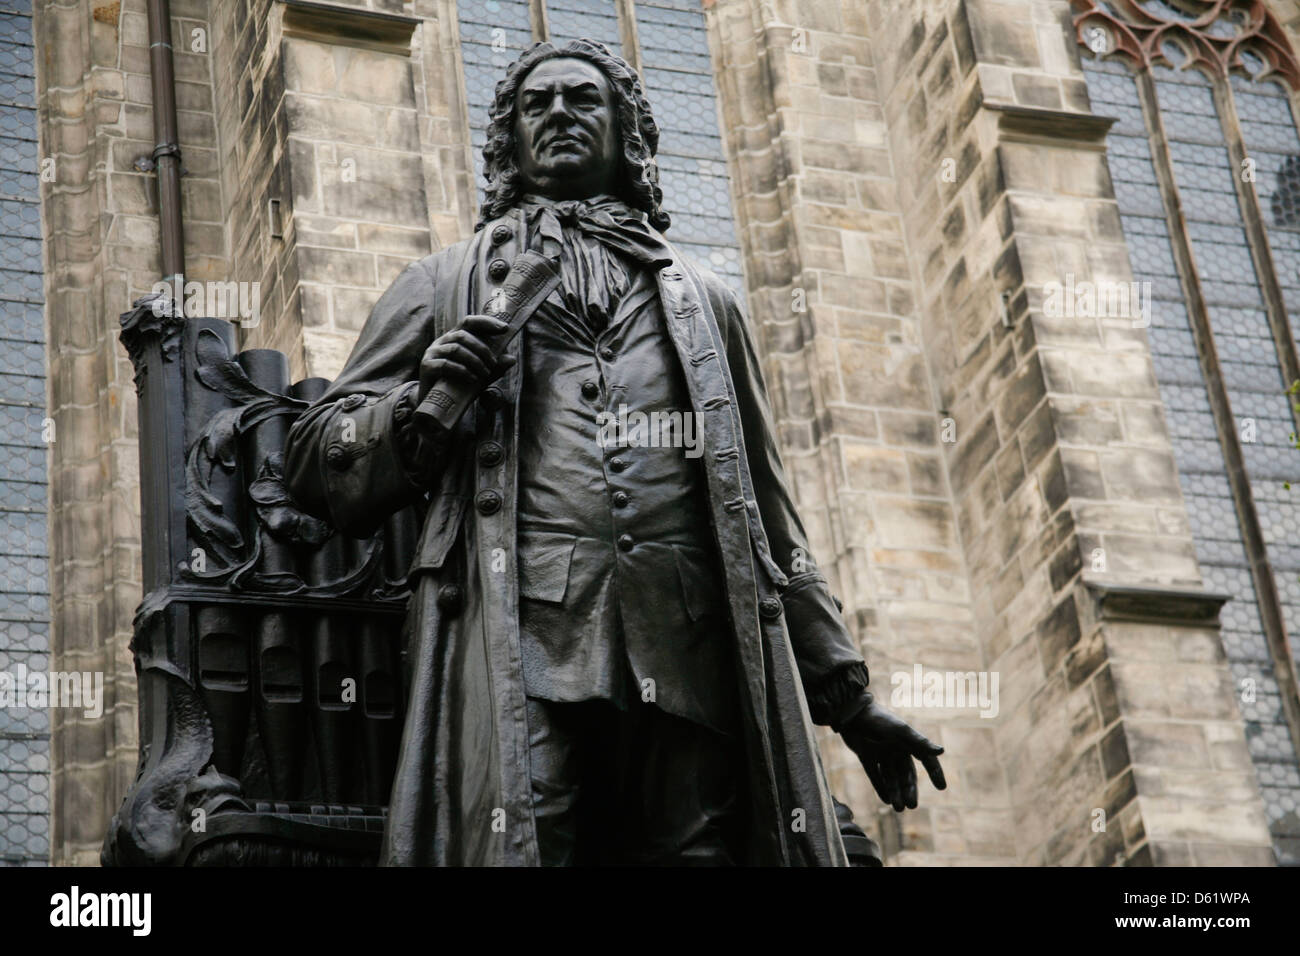 Statue von J.s S. Bach, im Innenhof der Thomaskirche in Leipzig, Deutschland. Stockfoto